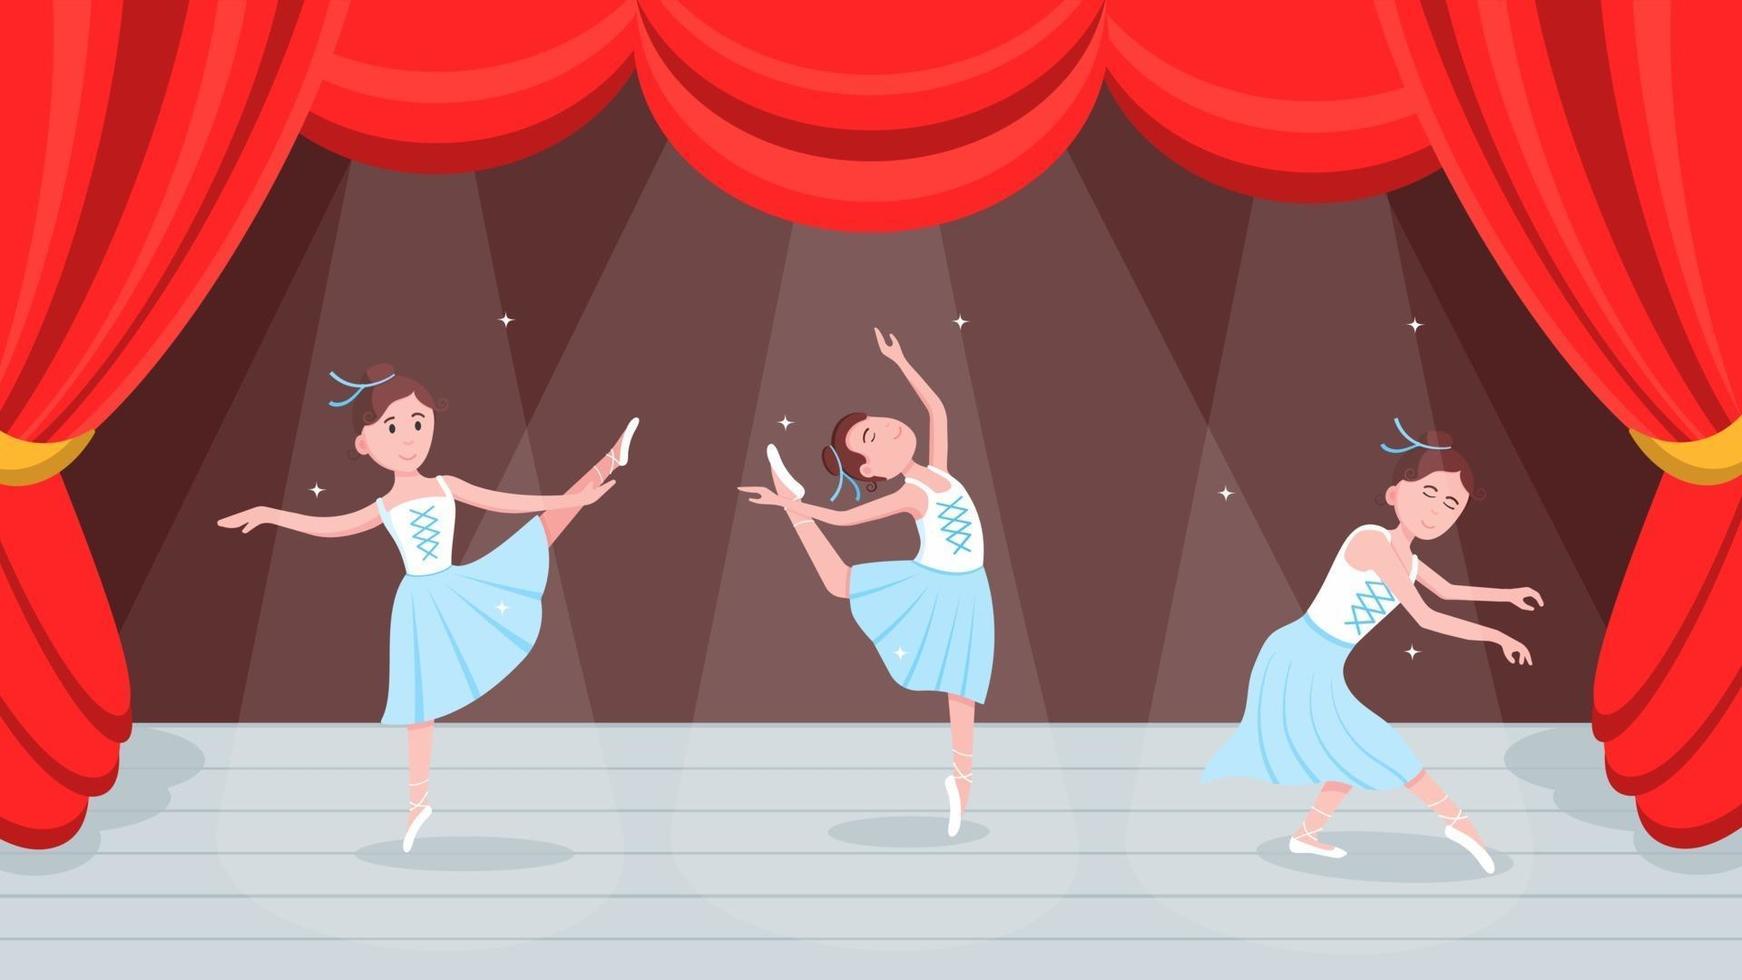 cortinas rojas abiertas, escena de baile con hermoso conjunto de bailarina. vector